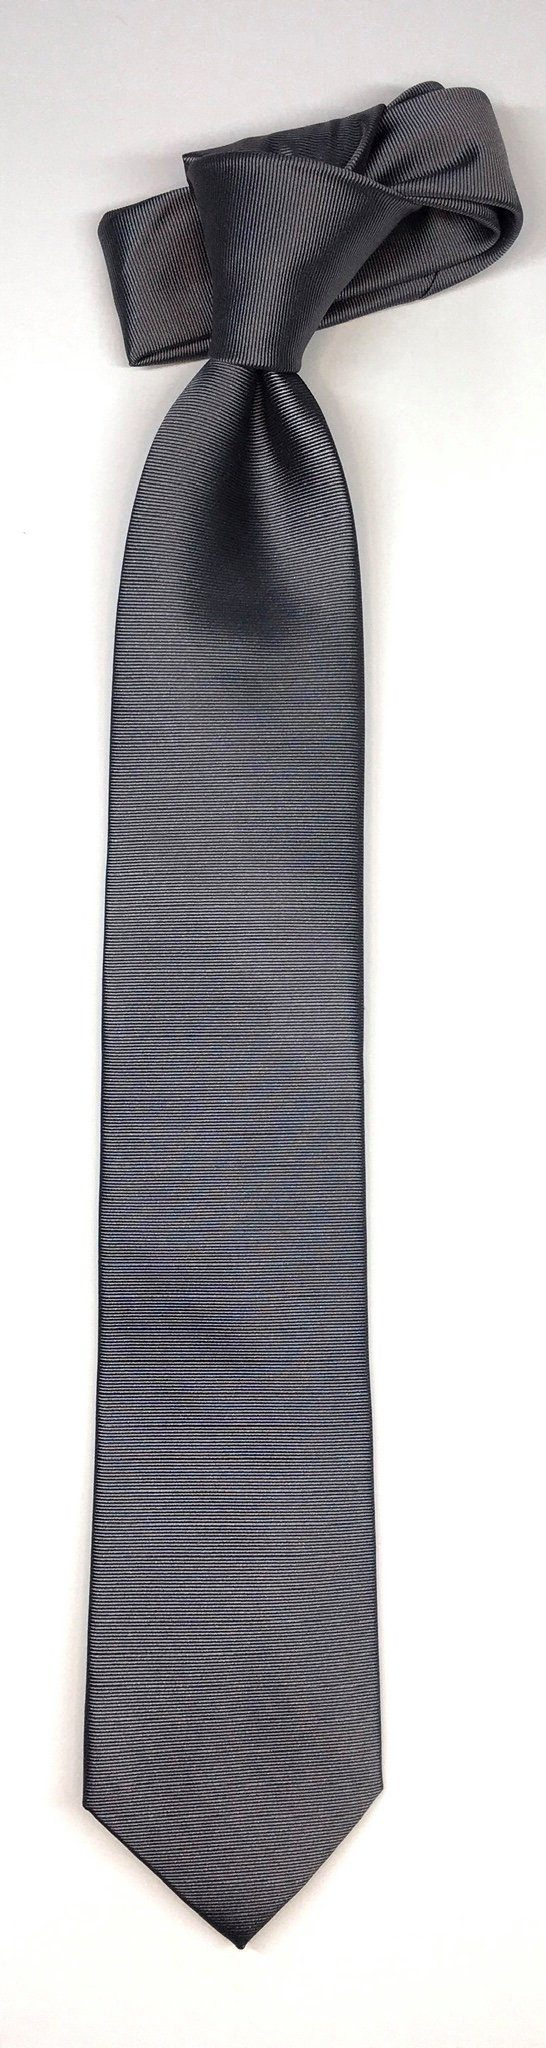 Seidenfalter Krawatte Seidenfalter Uni 7cm im Design Seidenfalter edlen Krawatte Uni Silber Krawatte